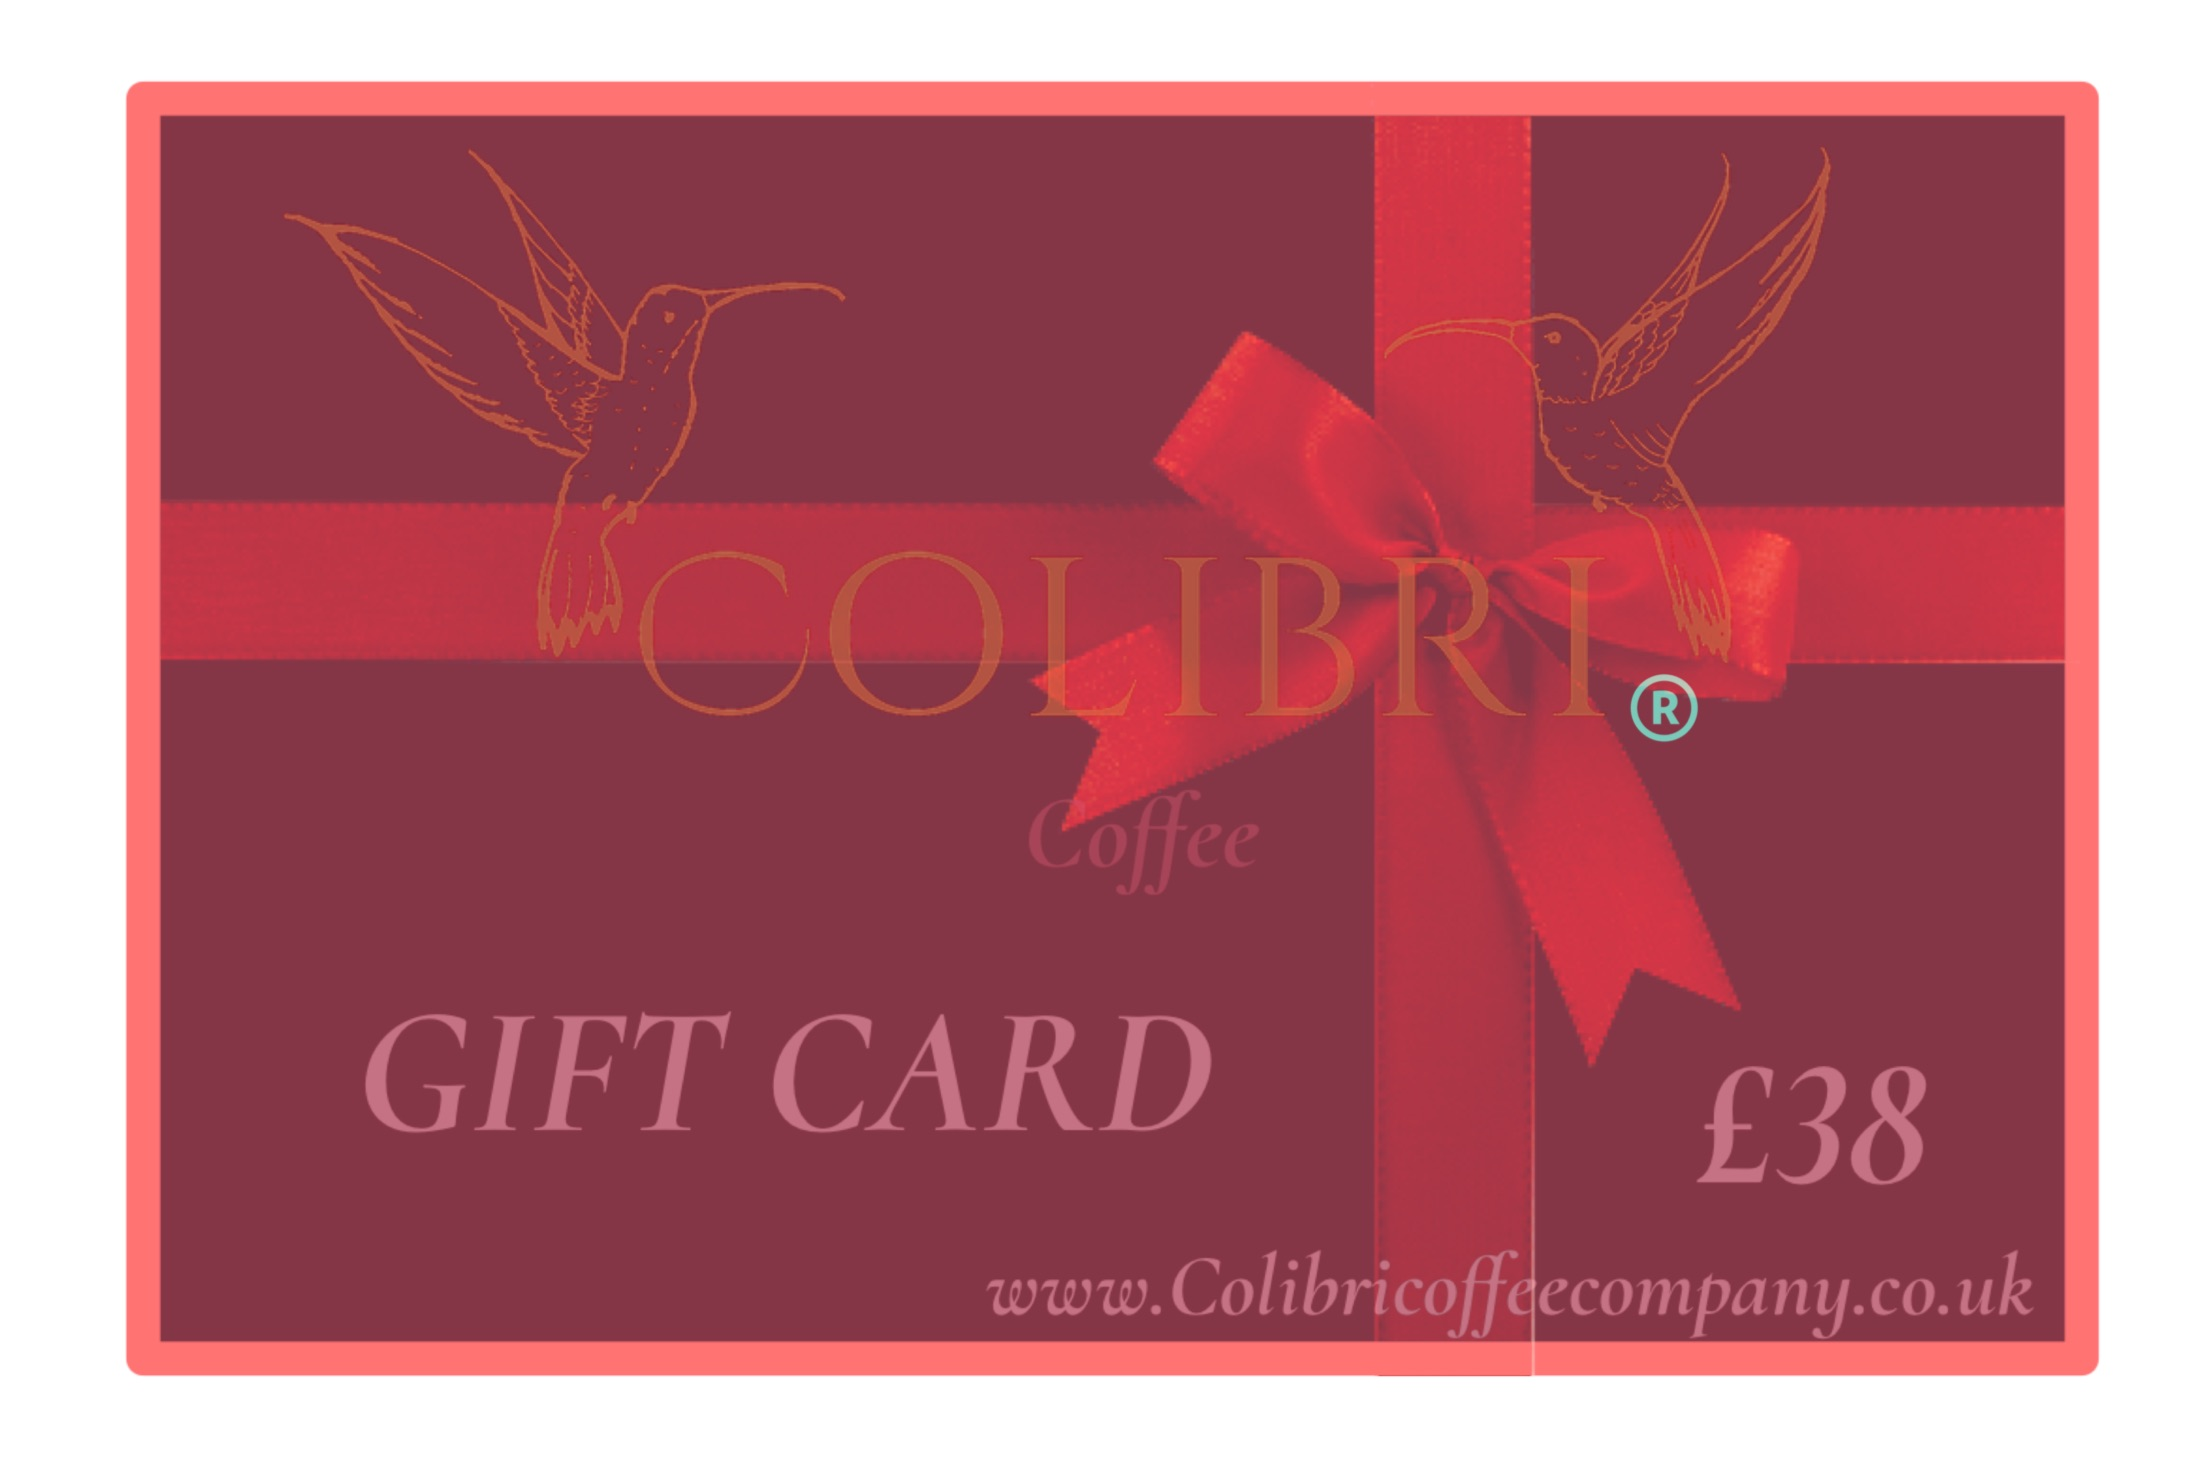 Colibri coffee gift card